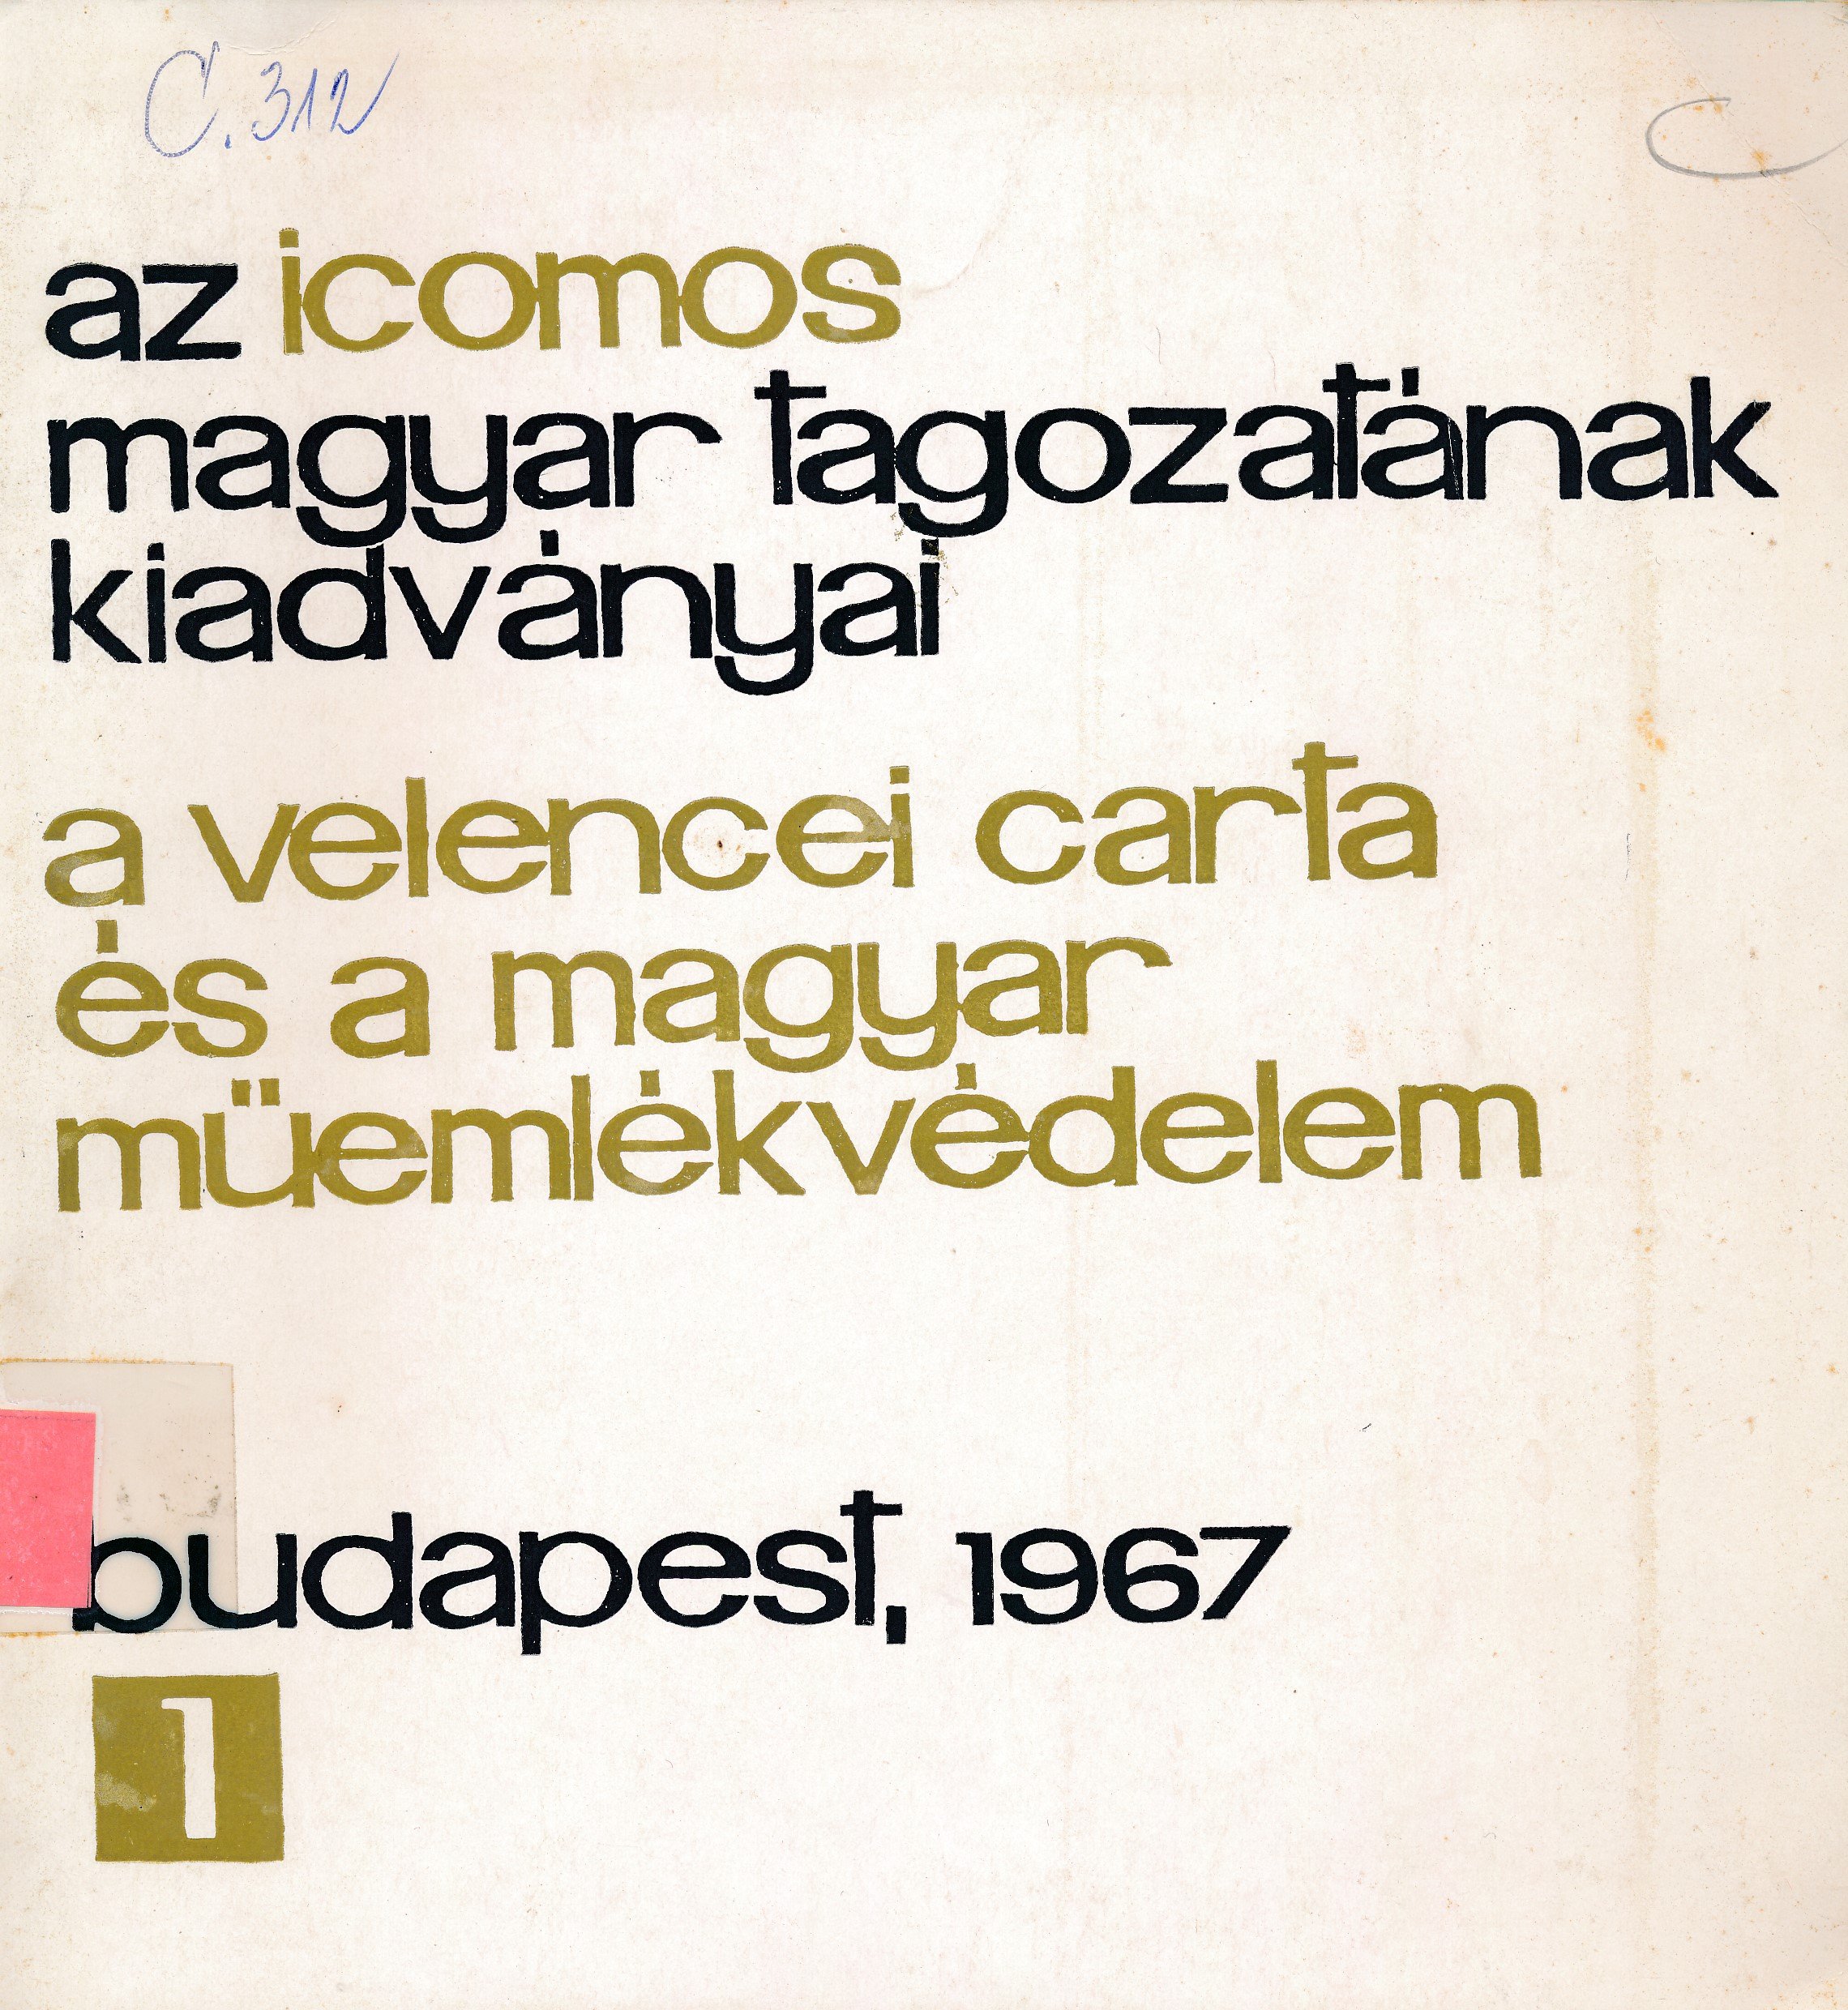 A velencei carta és a magyar műemlékvédelem (Erkel Ferenc Múzeum és Könyvtár, Gyula CC BY-NC-SA)